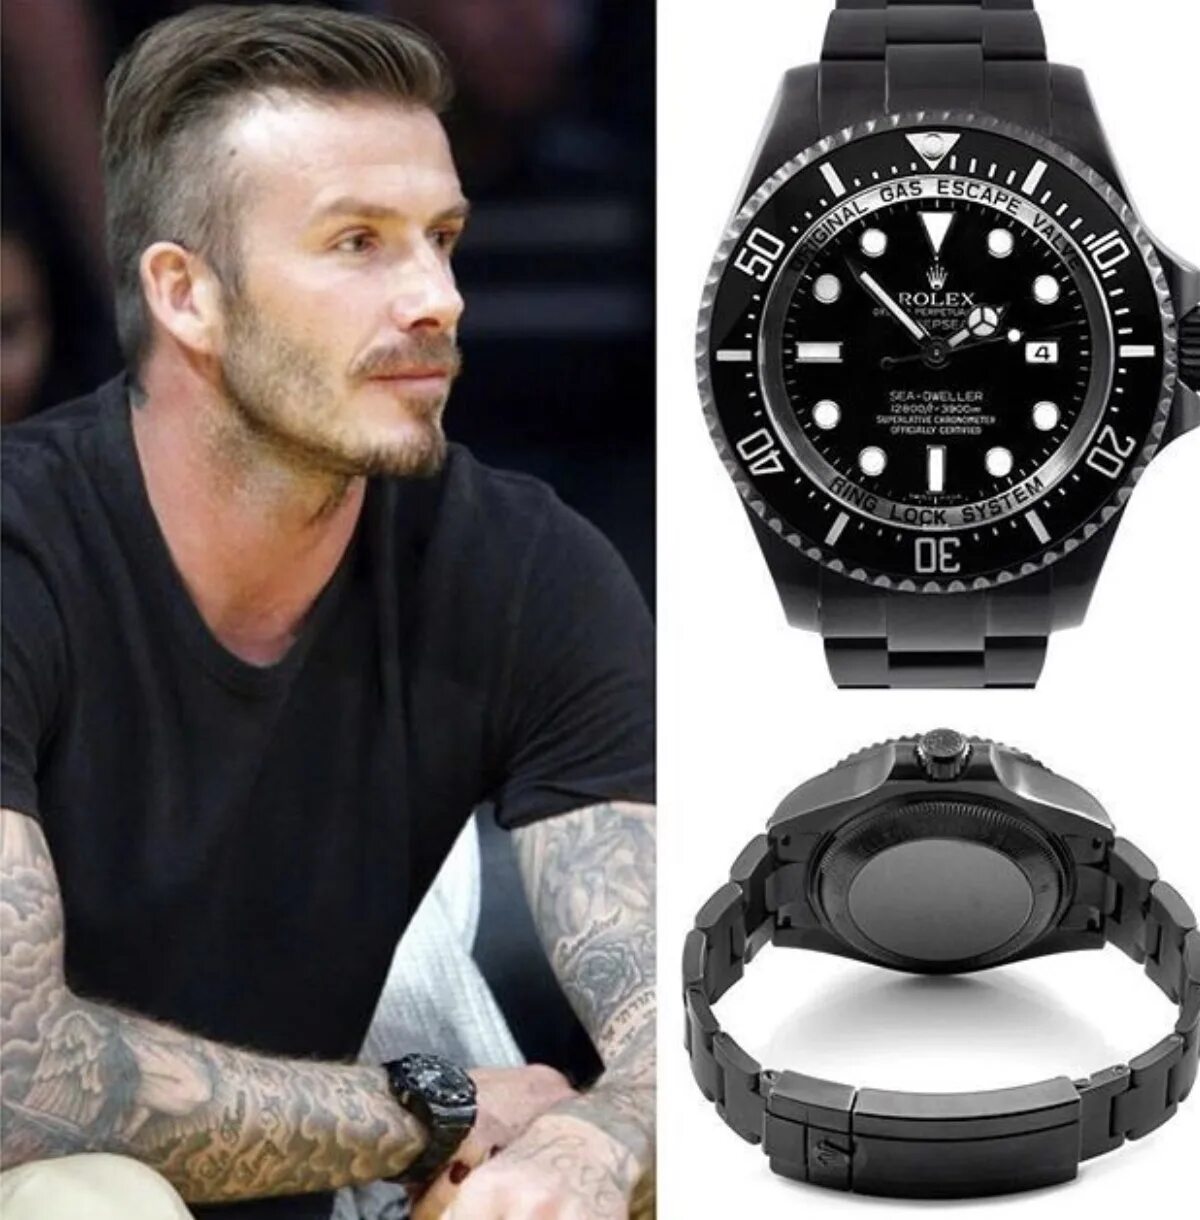 Watch tuning. David Beckham часы. Beckham Rolex. STCO David Beckham часы. Rolex David Beckham.